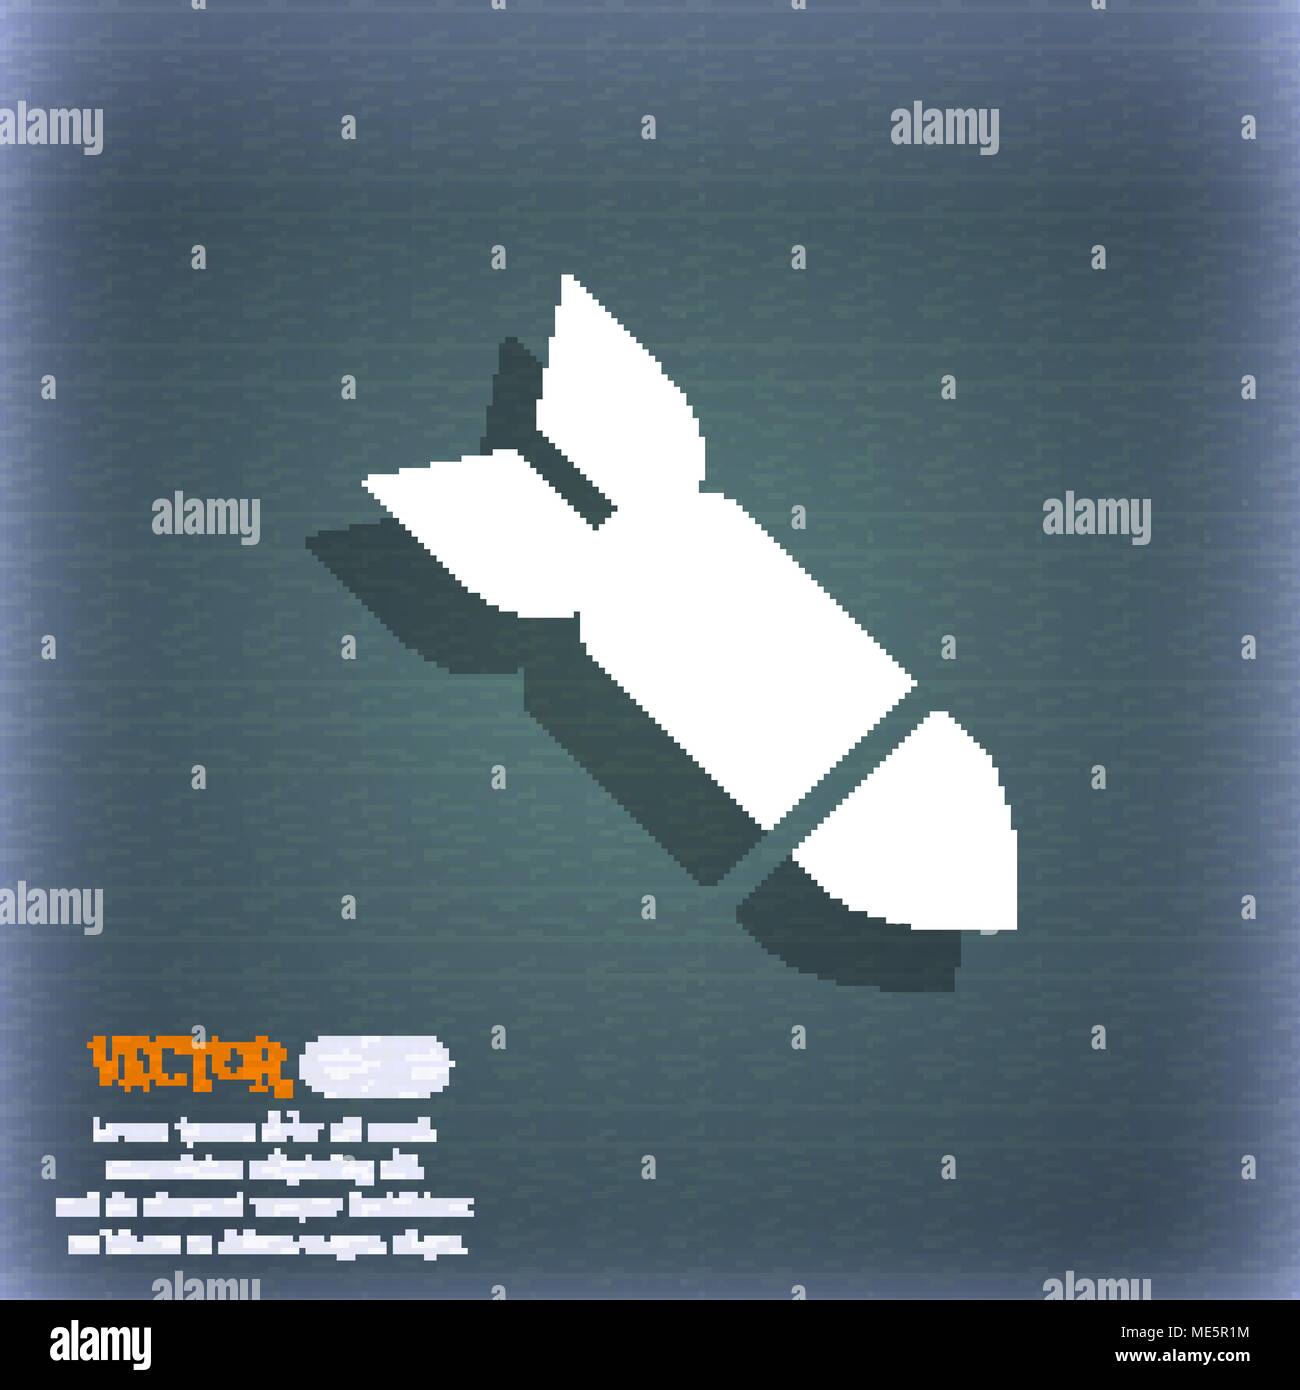 Rakete Rakete Waffe Symbol Symbol auf dem blau-grünen Abstrakt Hintergrund mit Schatten und Platz für Ihren Text. Vector Illustration Stock Vektor